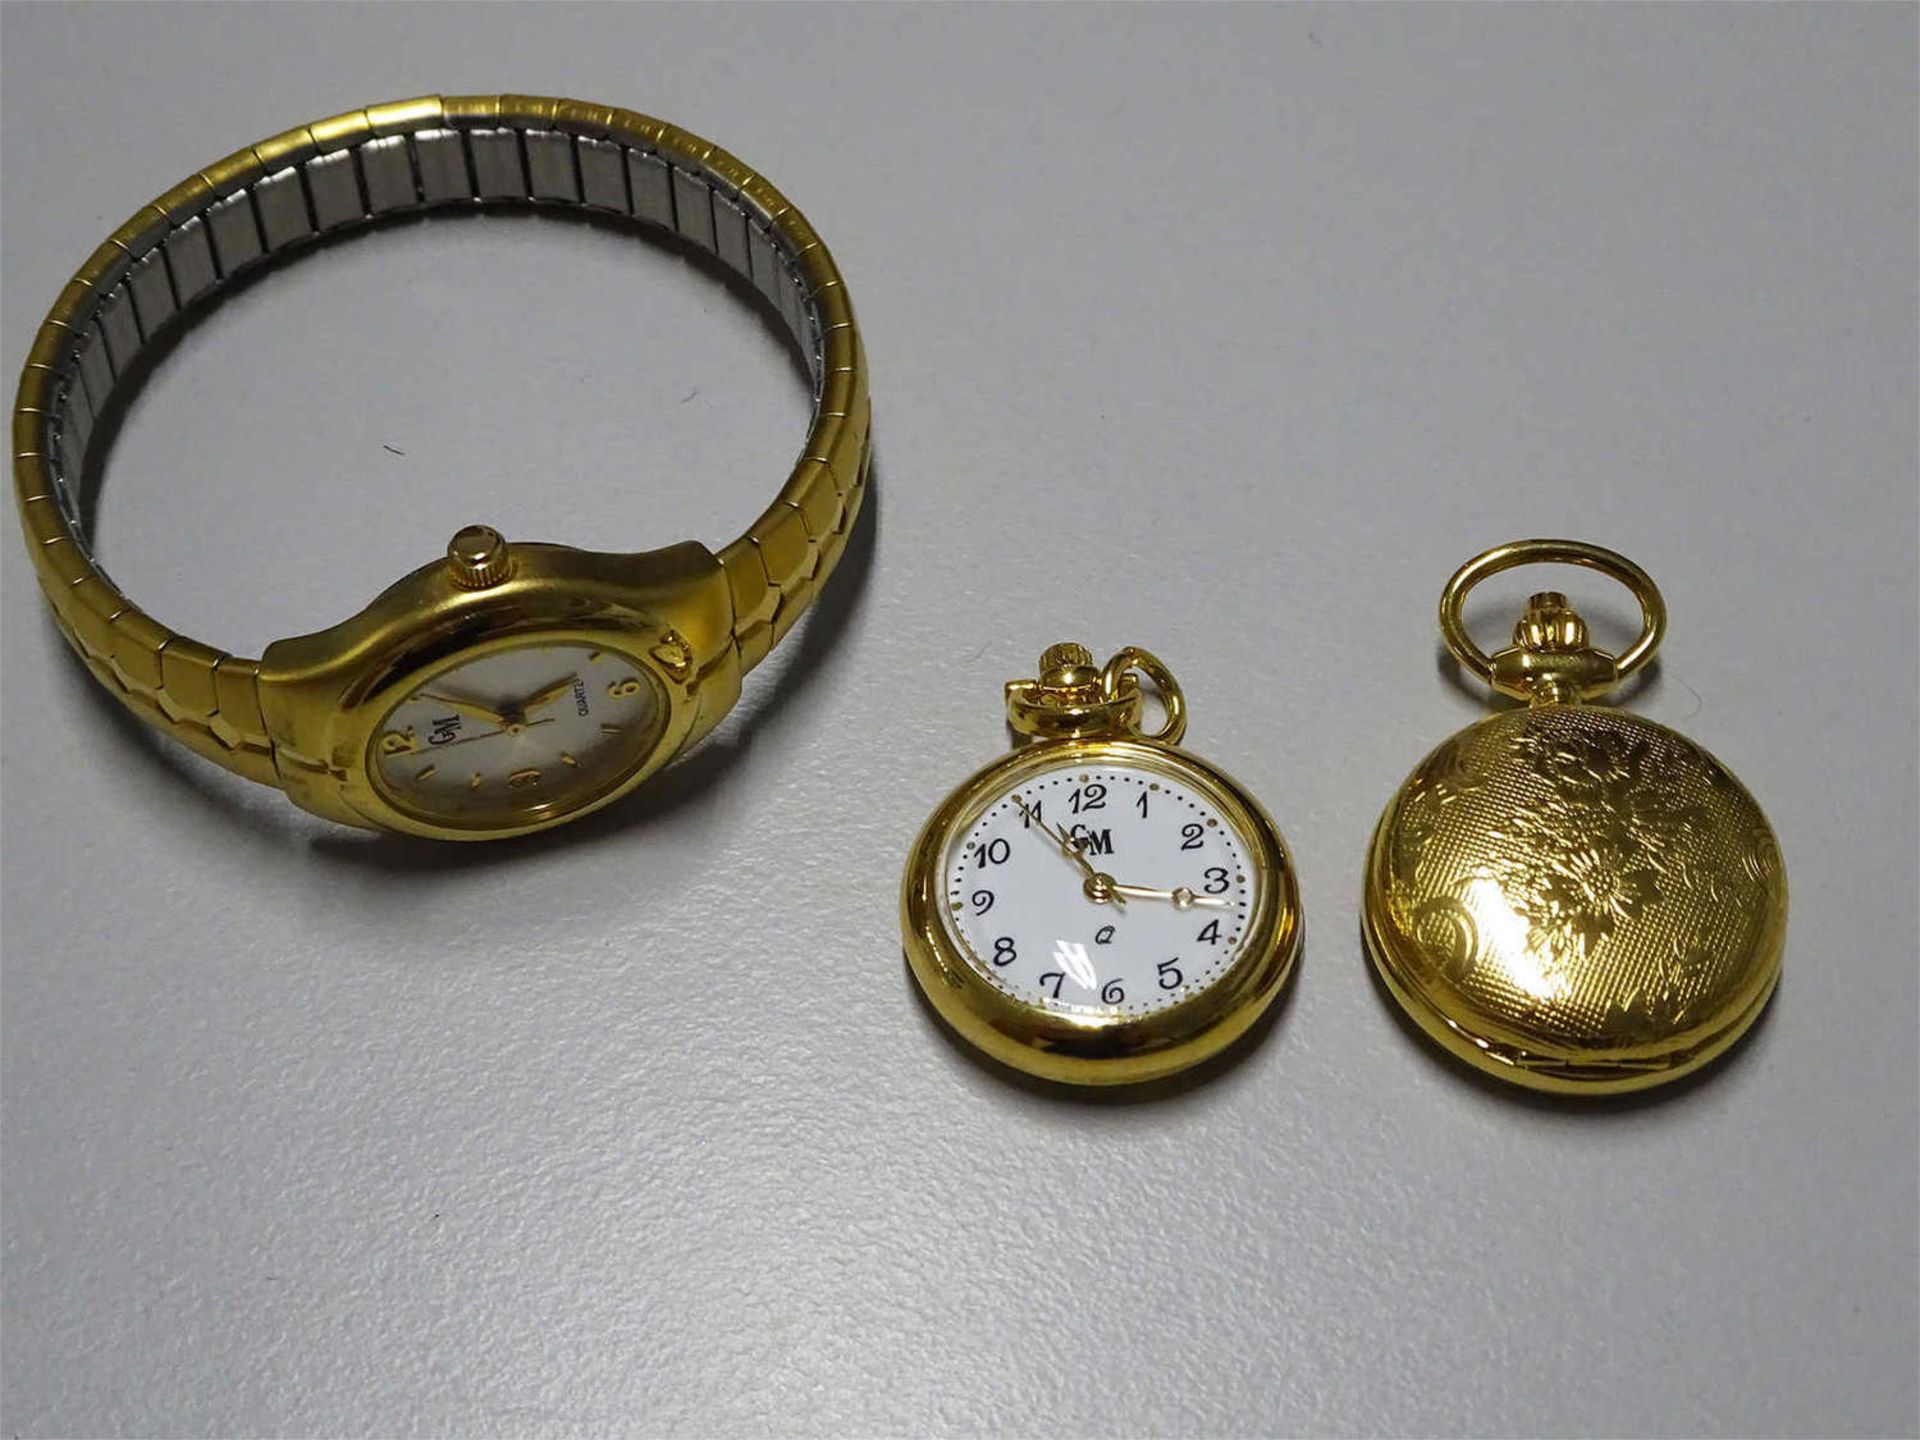 3 Goldmeister Damenuhren, dabei 1 Armbanduhr, 1 kleine Taschenuhr, sowie 1 kleine Uhr als